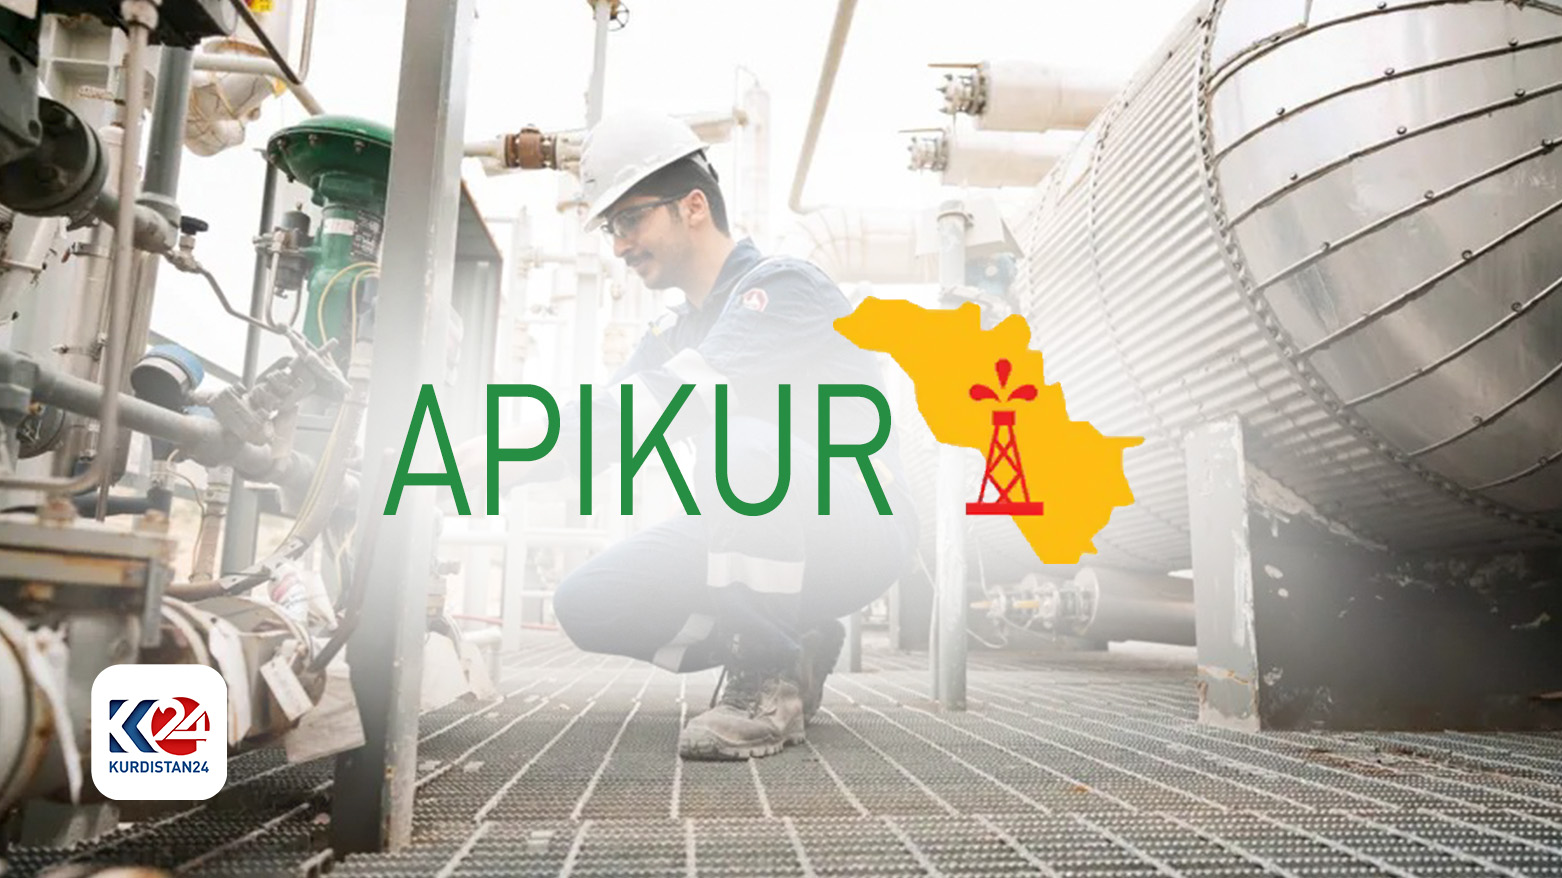 APIKUR Logo. (Photo: Kurdistan 24)